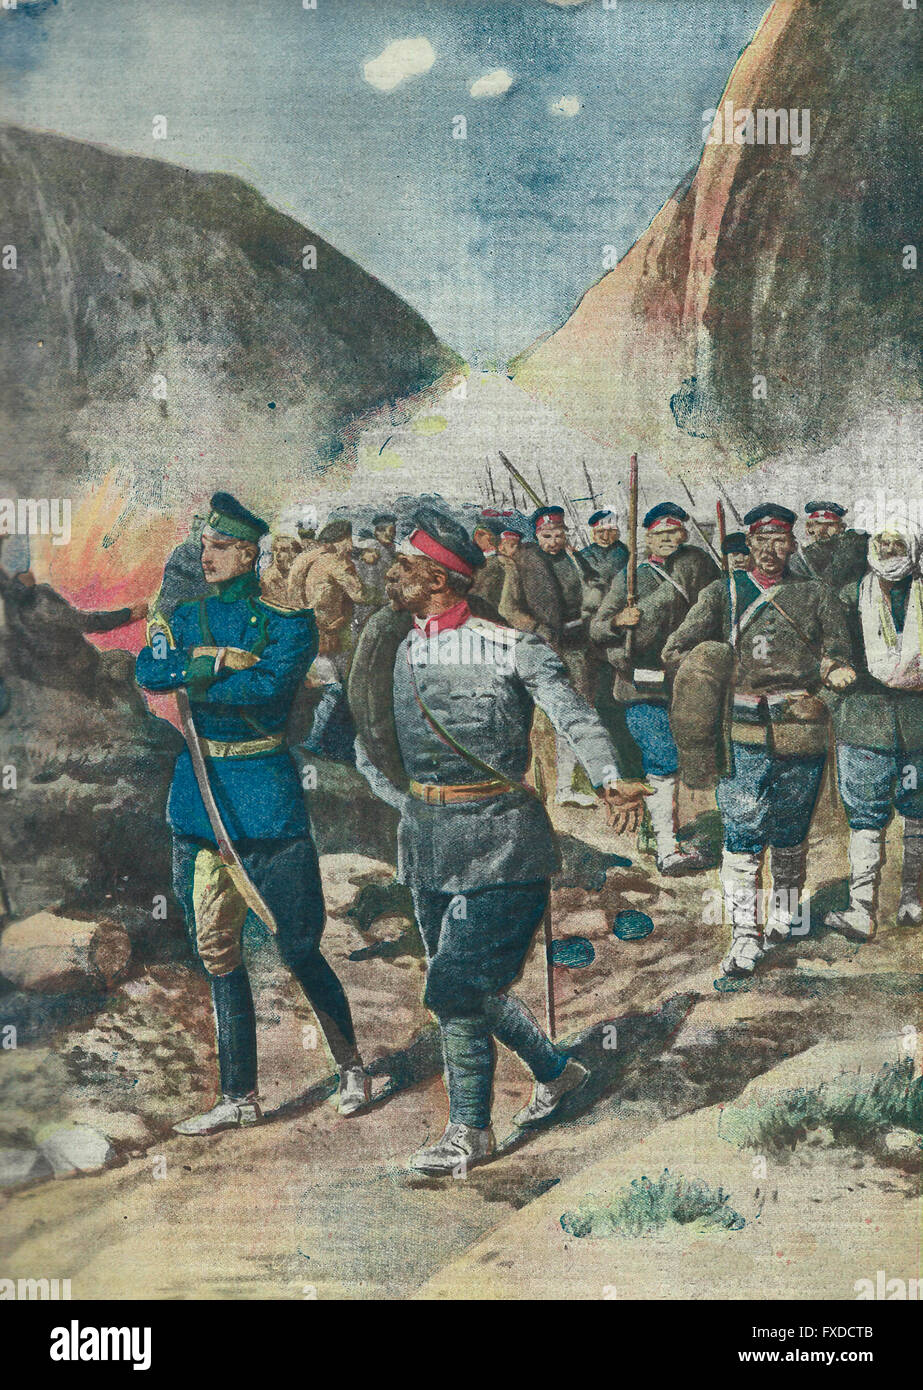 Los acontecimientos de la guerra: Los búlgaros, victorioso de ayer, derrotó hoy en retiro perseguido, atormentado por el fuego enemigo. 1913 Foto de stock